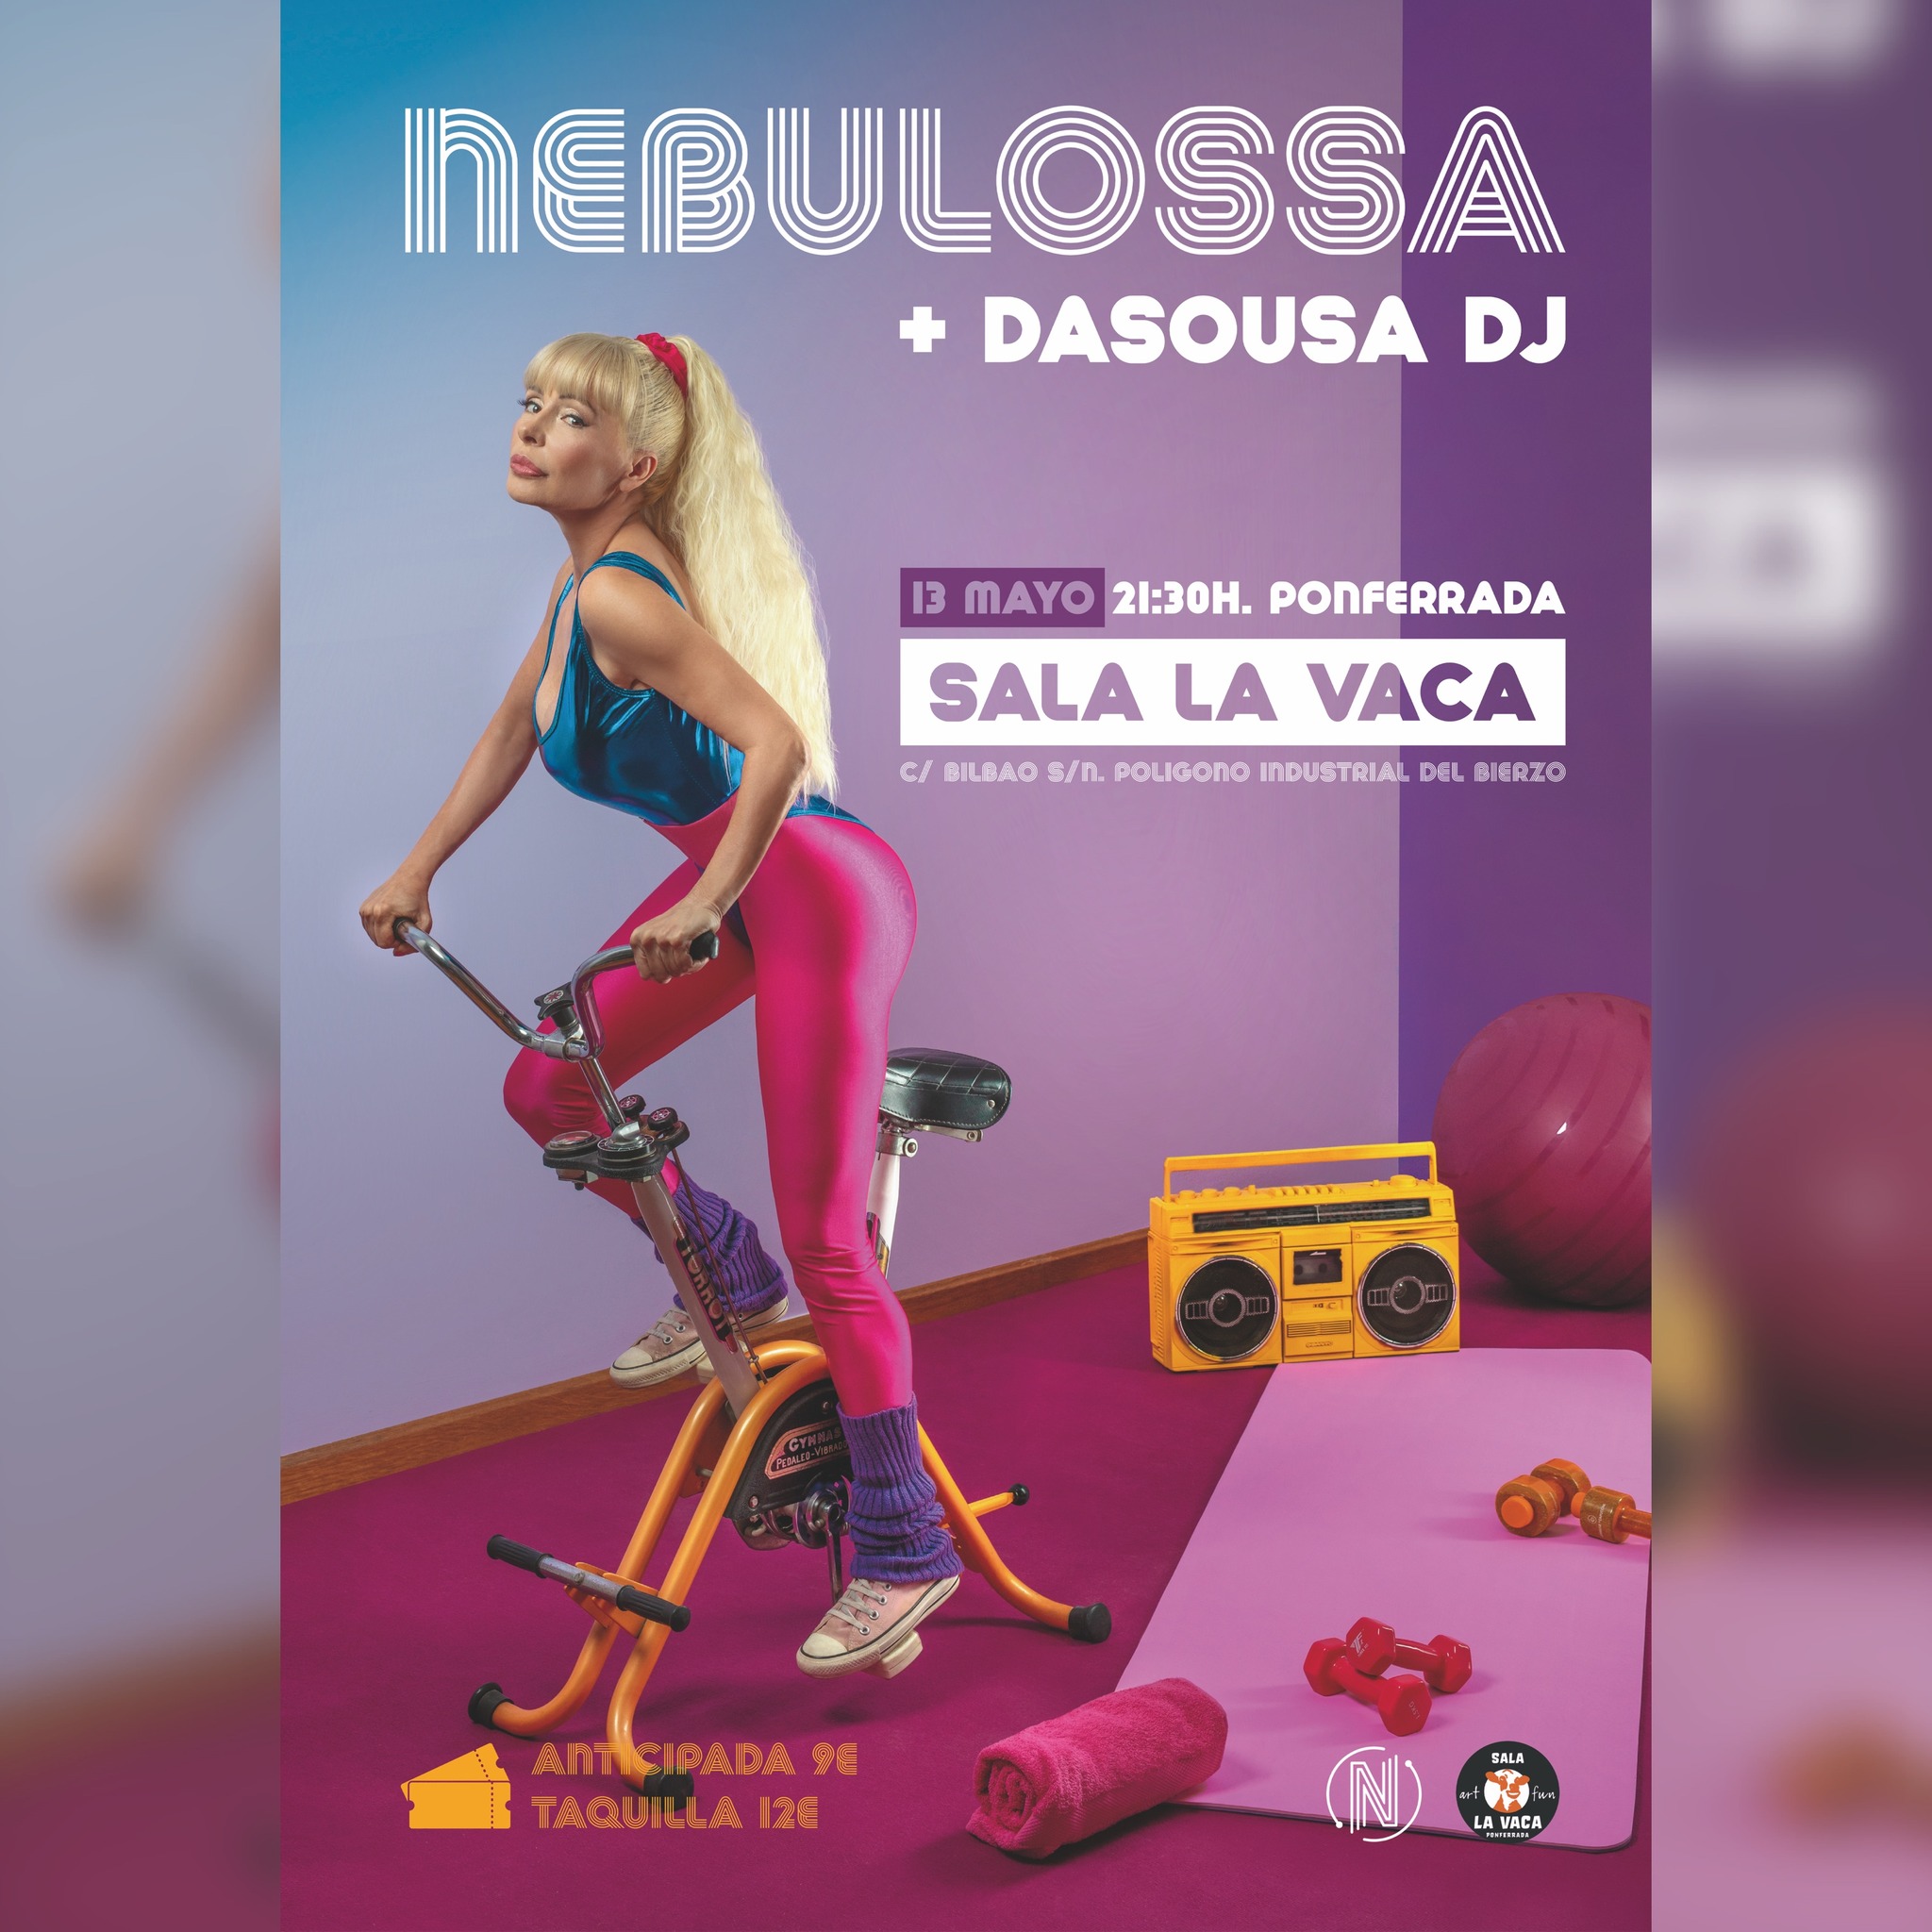 Nebulossa recuerda amargamente como el año pasado nadie acudió a su concierto en Ponferrada 2